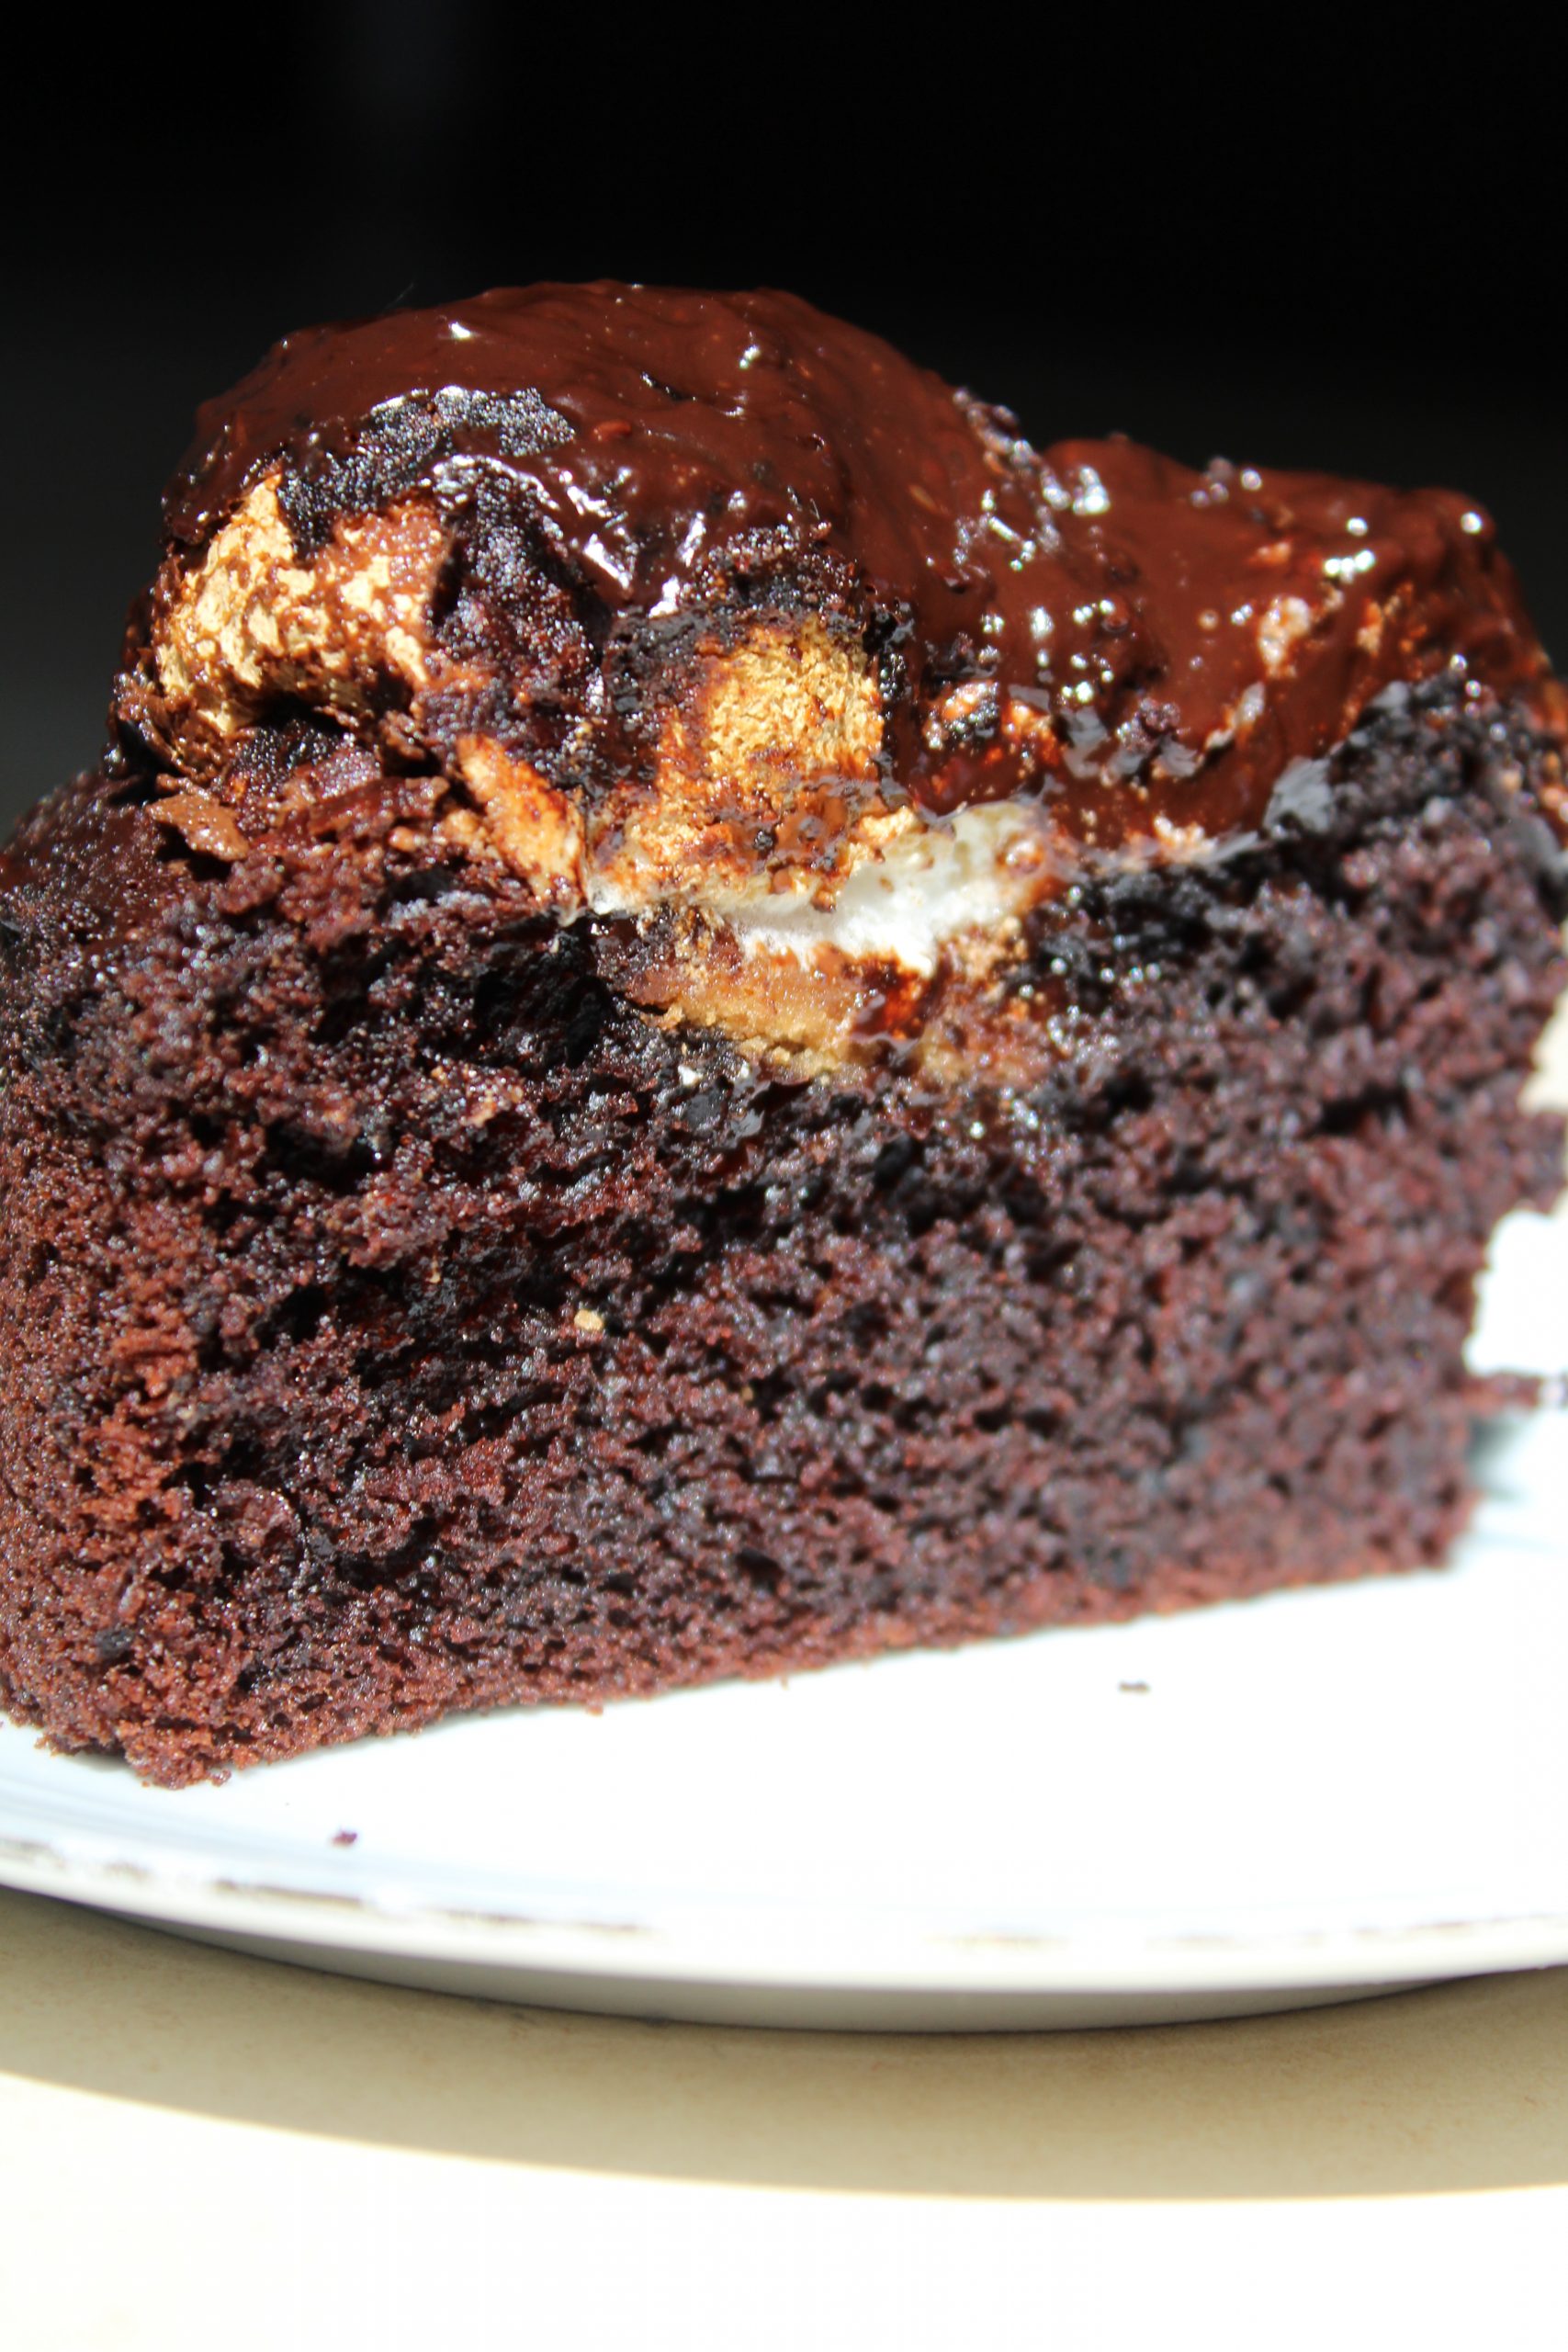 עוגת קרמבו פרווה - עוגת שוקולד קקאו בחושה וקלה במילוי קרמבו (ביסקוויט ומרנג מרשמלו) בציפוי גנאש שוקולד מריר